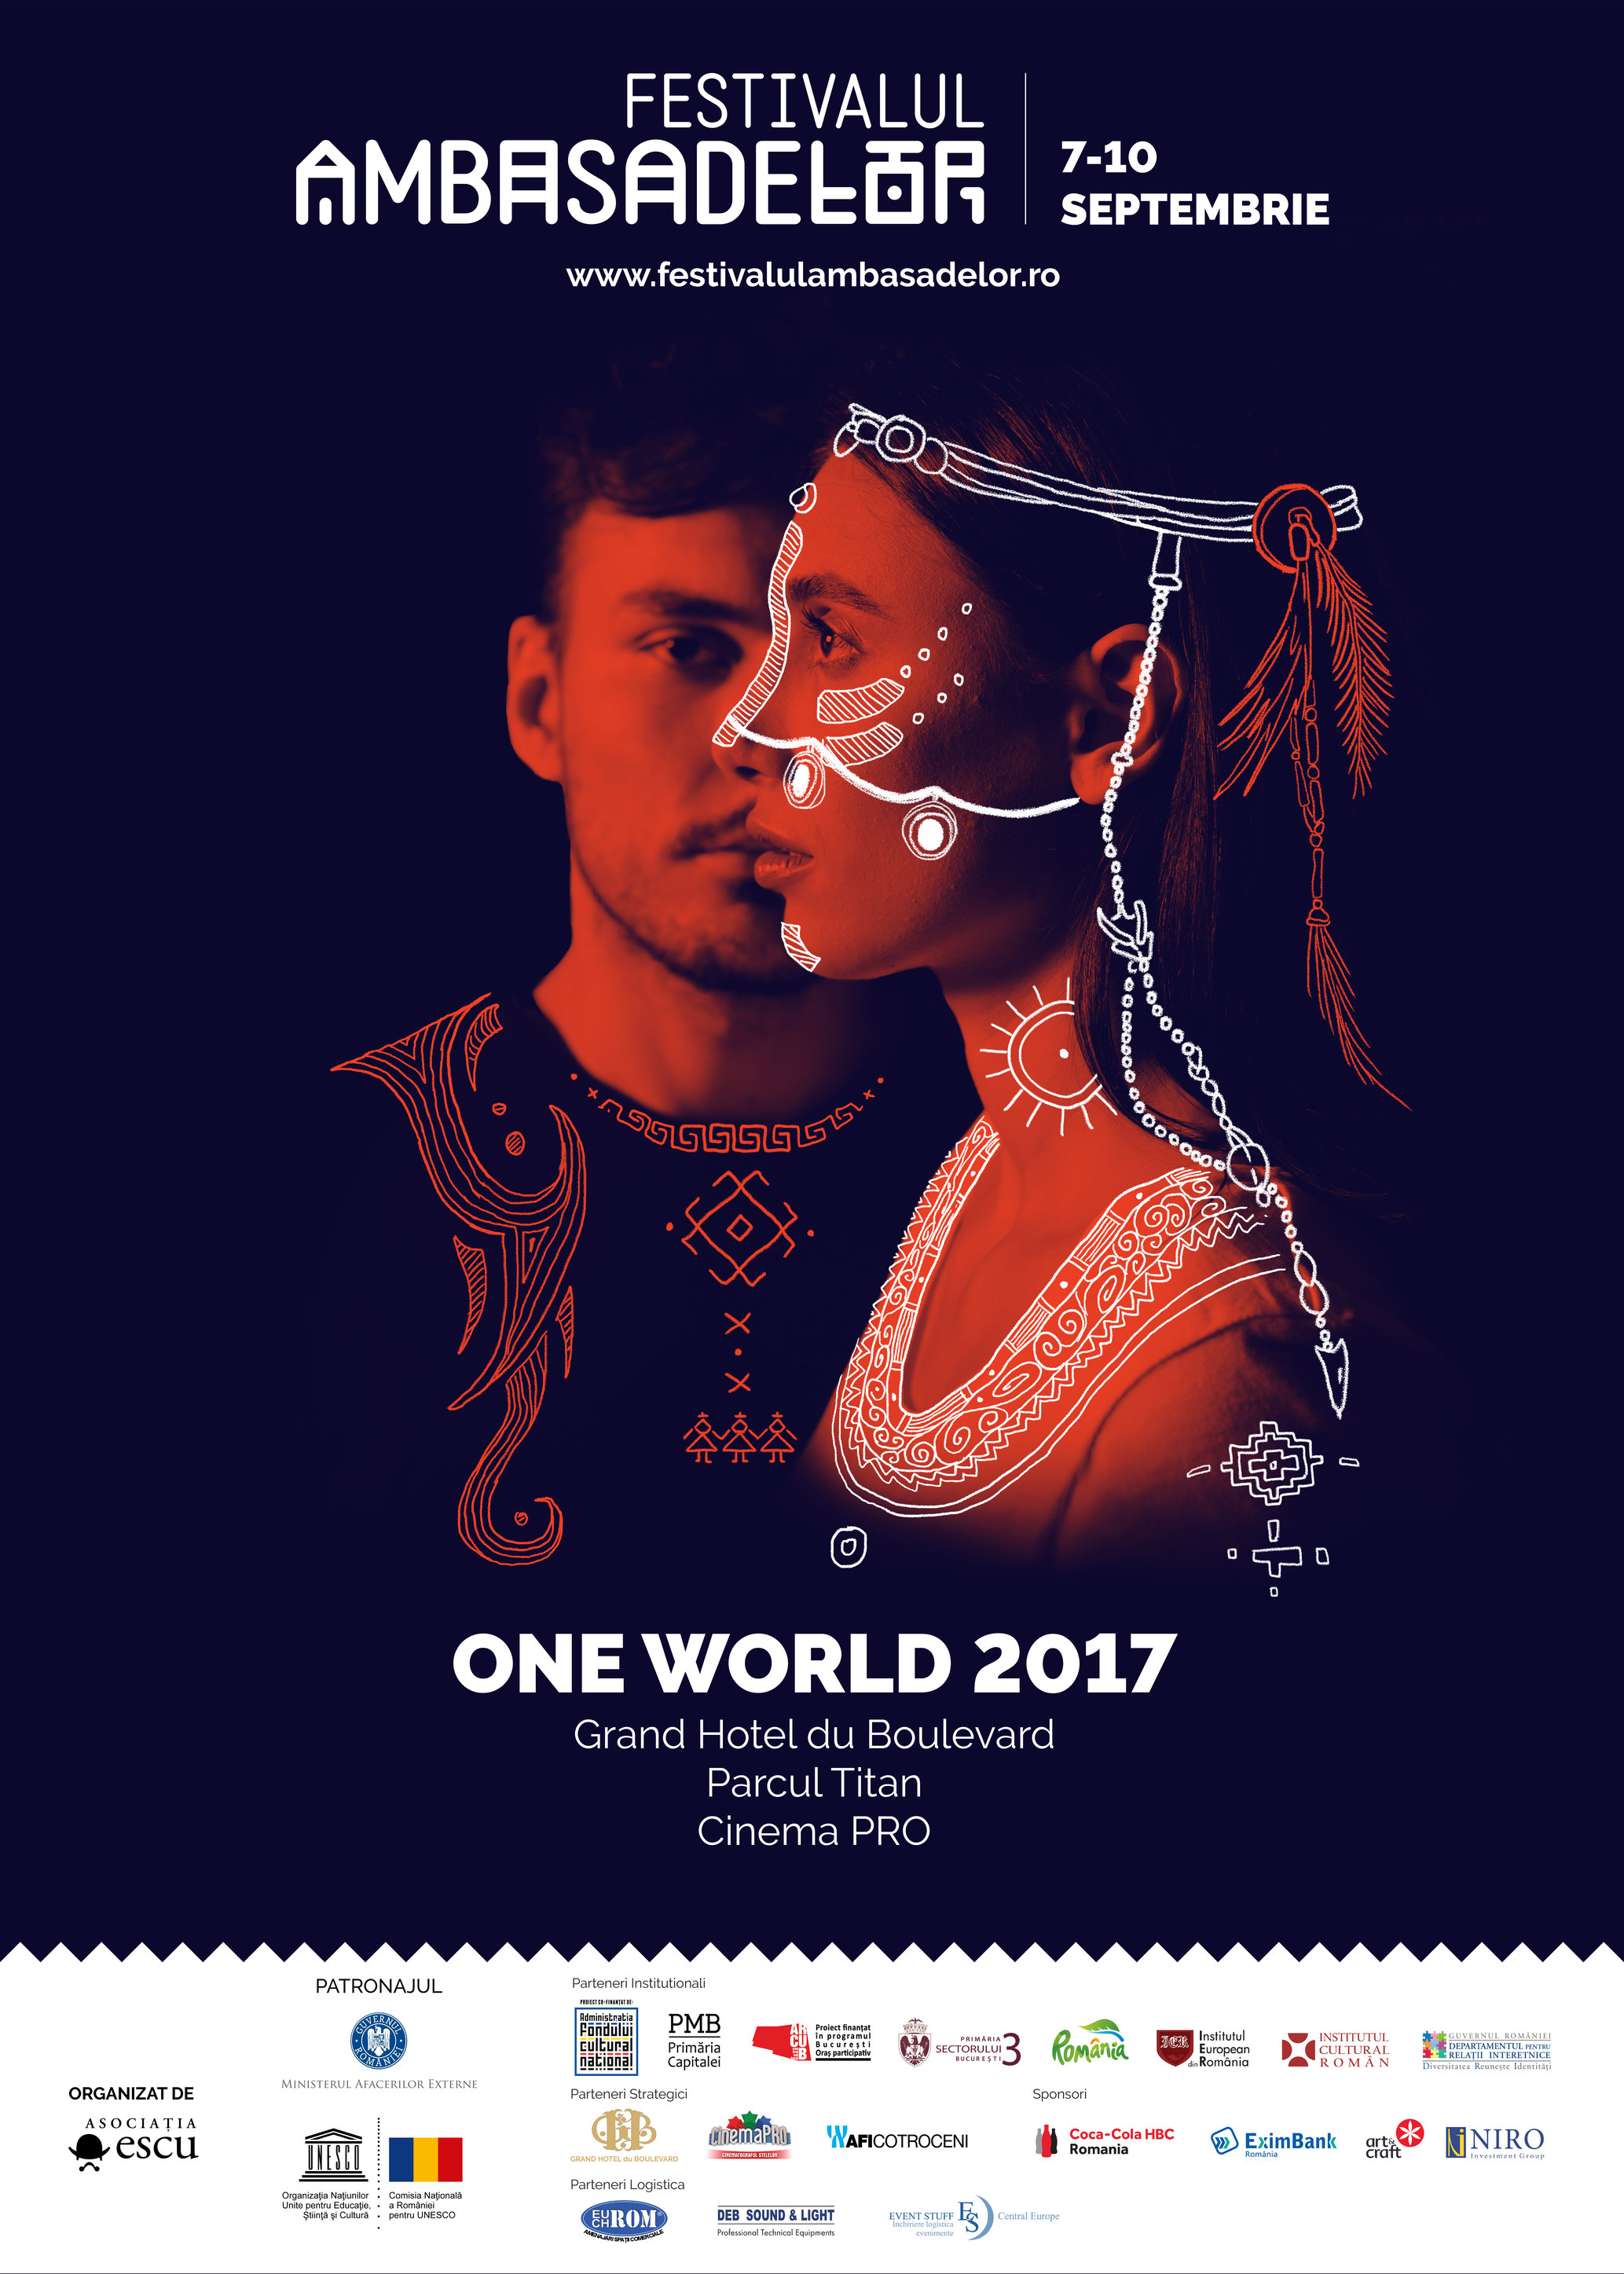  Festivalul Ambasadelor “One World” 2017, 7-10 septembrie 2017, ediția a III-a, Grand Hotel du Boulevard, Cinema PRO și Parcul Titan